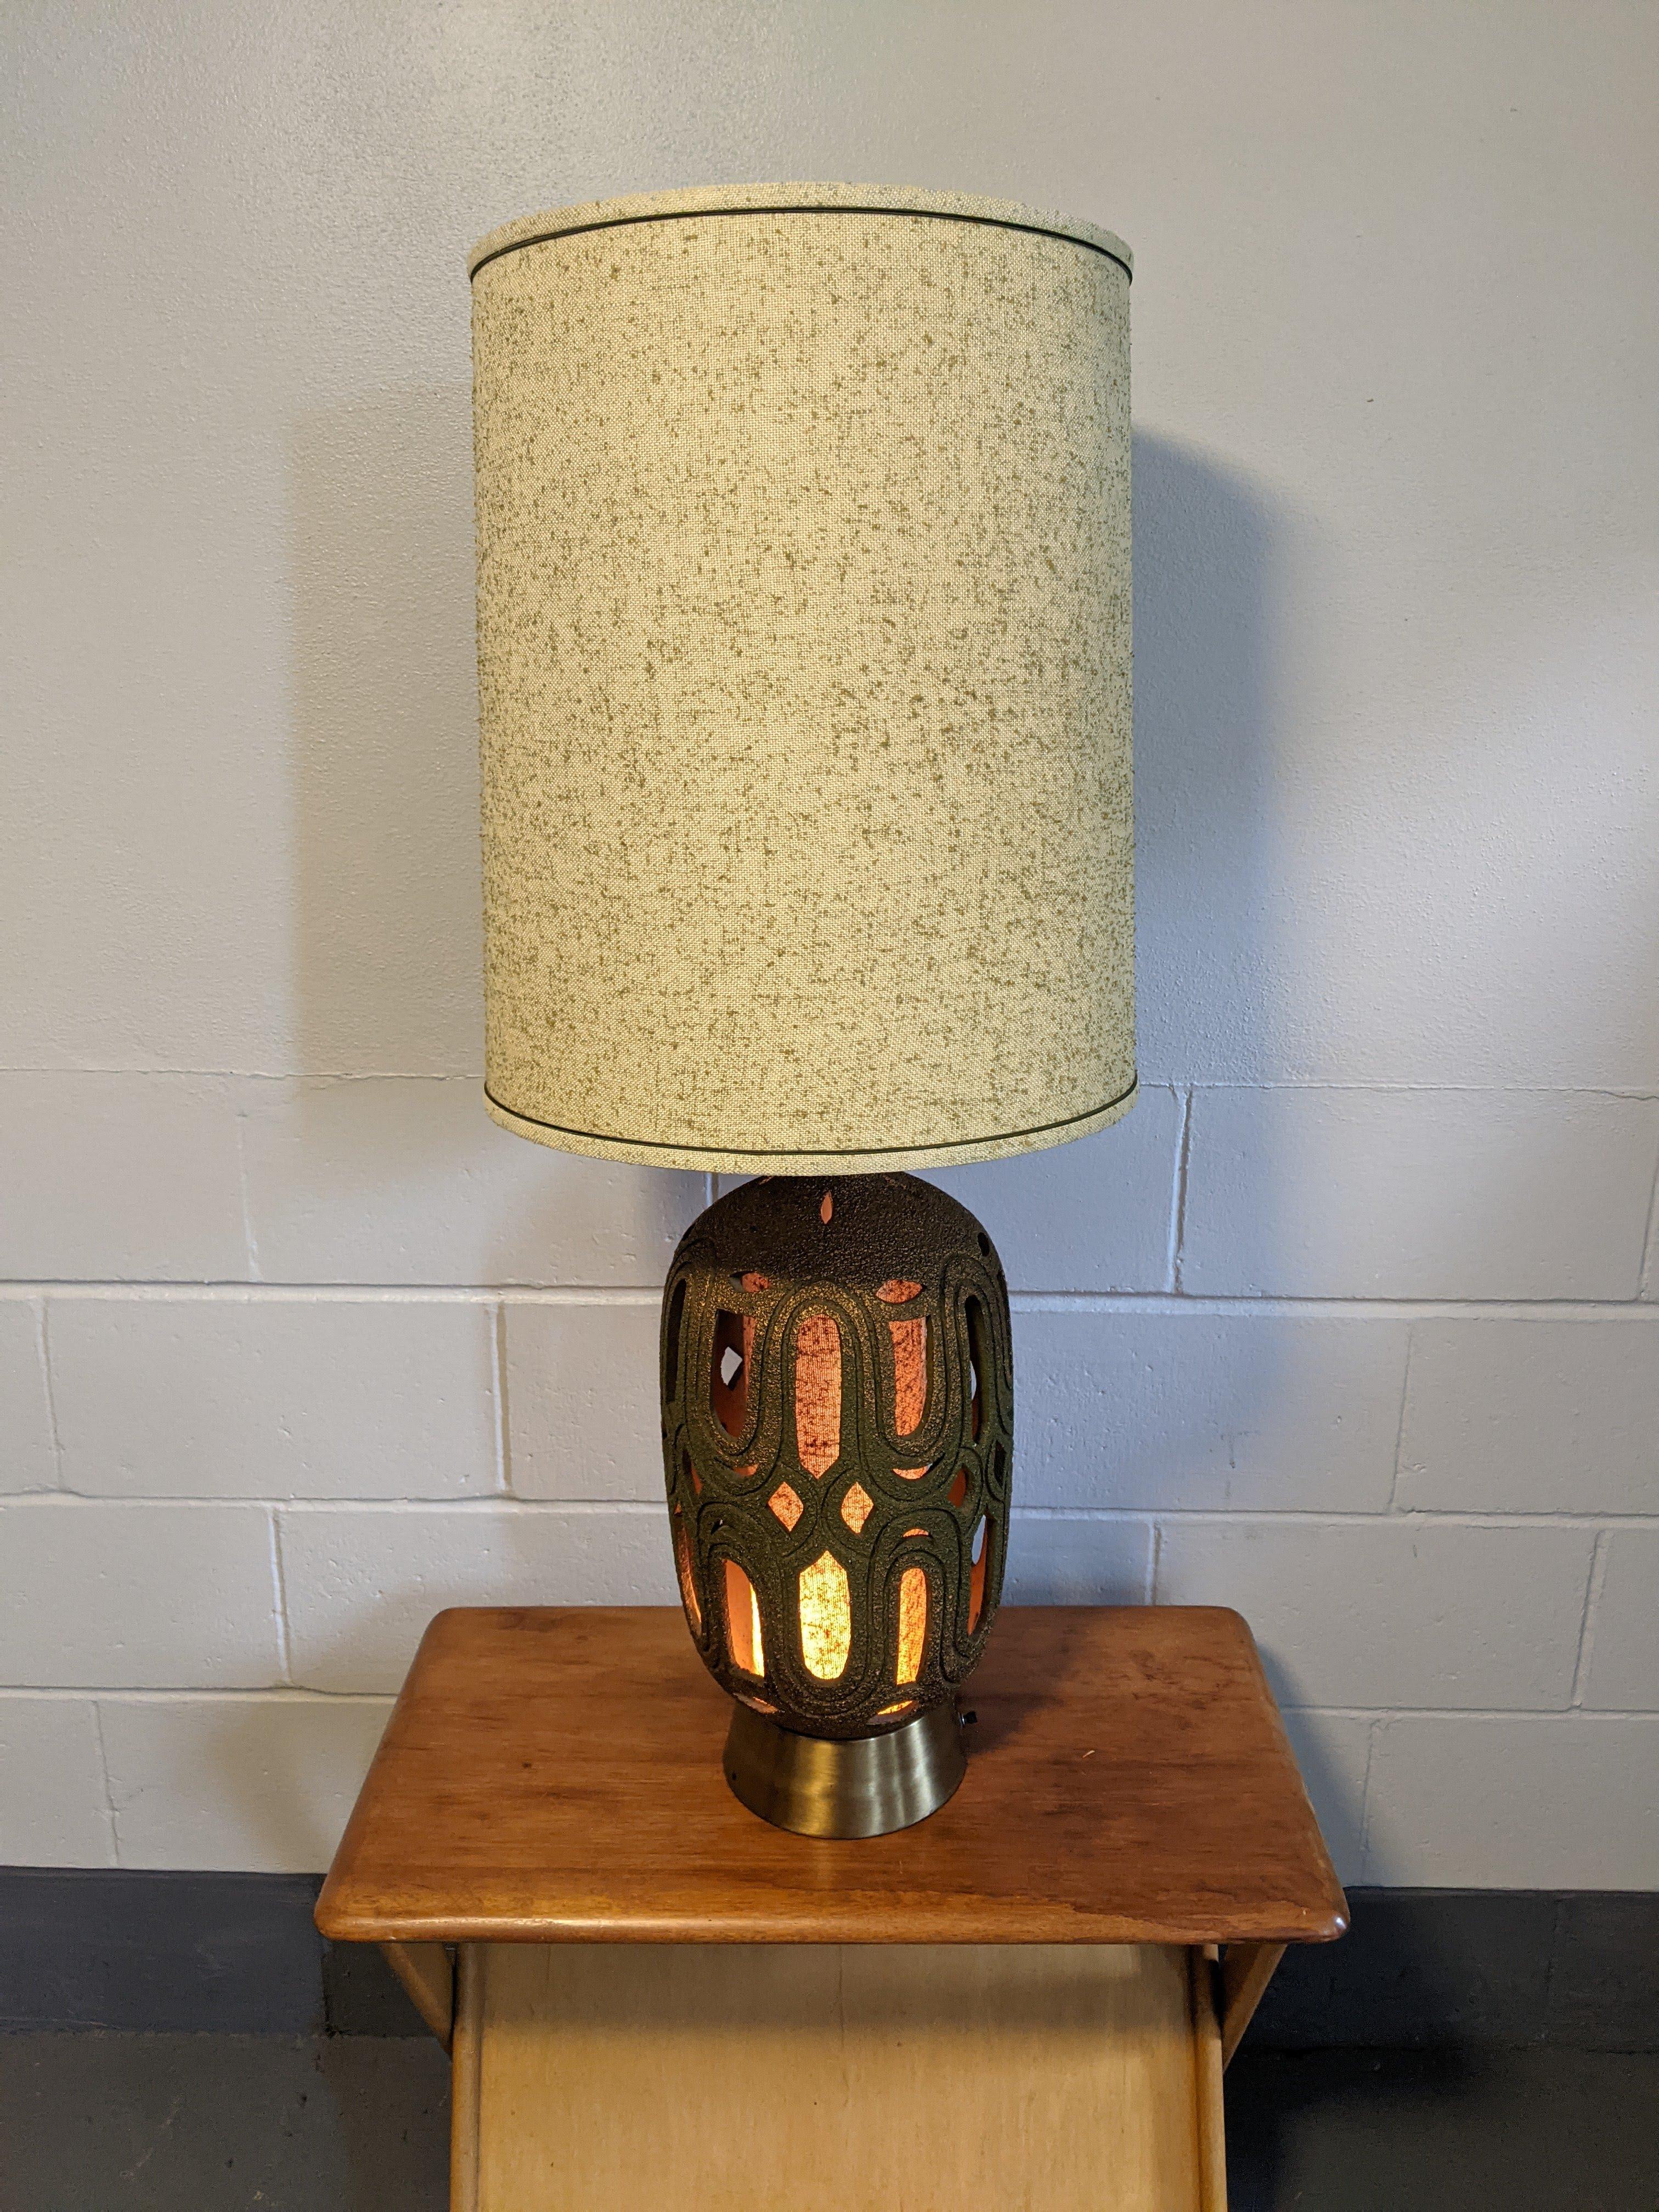 Grand lampadaire Vintage ChilO avec abat-jour d'origine, vers les années 1970.

Base de couleur or ou laiton, texturée. Interrupteurs sur la base et le col, l'intérieur de la base s'illumine avec un tissu assorti à l'abat-jour.

Bon état vintage.